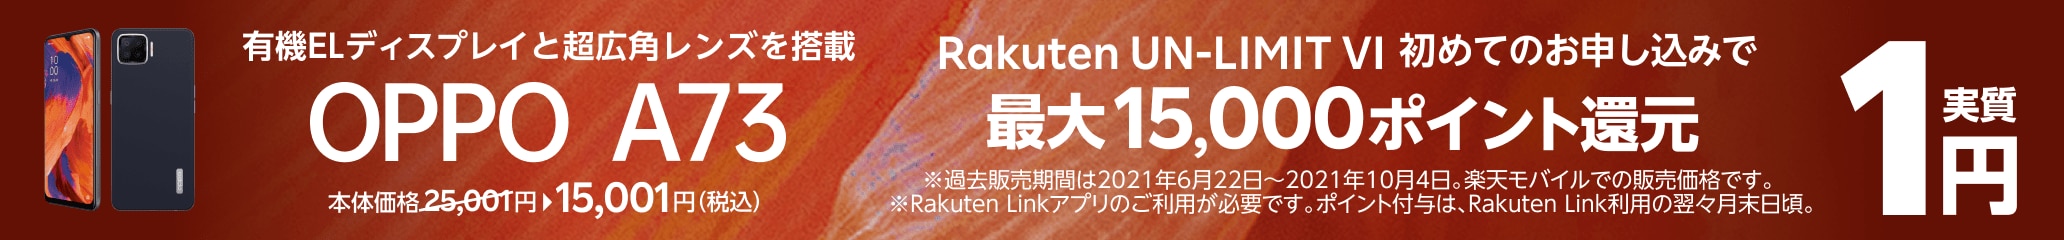 有機ELディスプレイと超広角レンズを搭載 OPPO A73 Rakuten UN-LIMIT VI 初めてのお申し込みで実質1円 本体価格25,001円(税込) さらに最大25,000ポイント還元